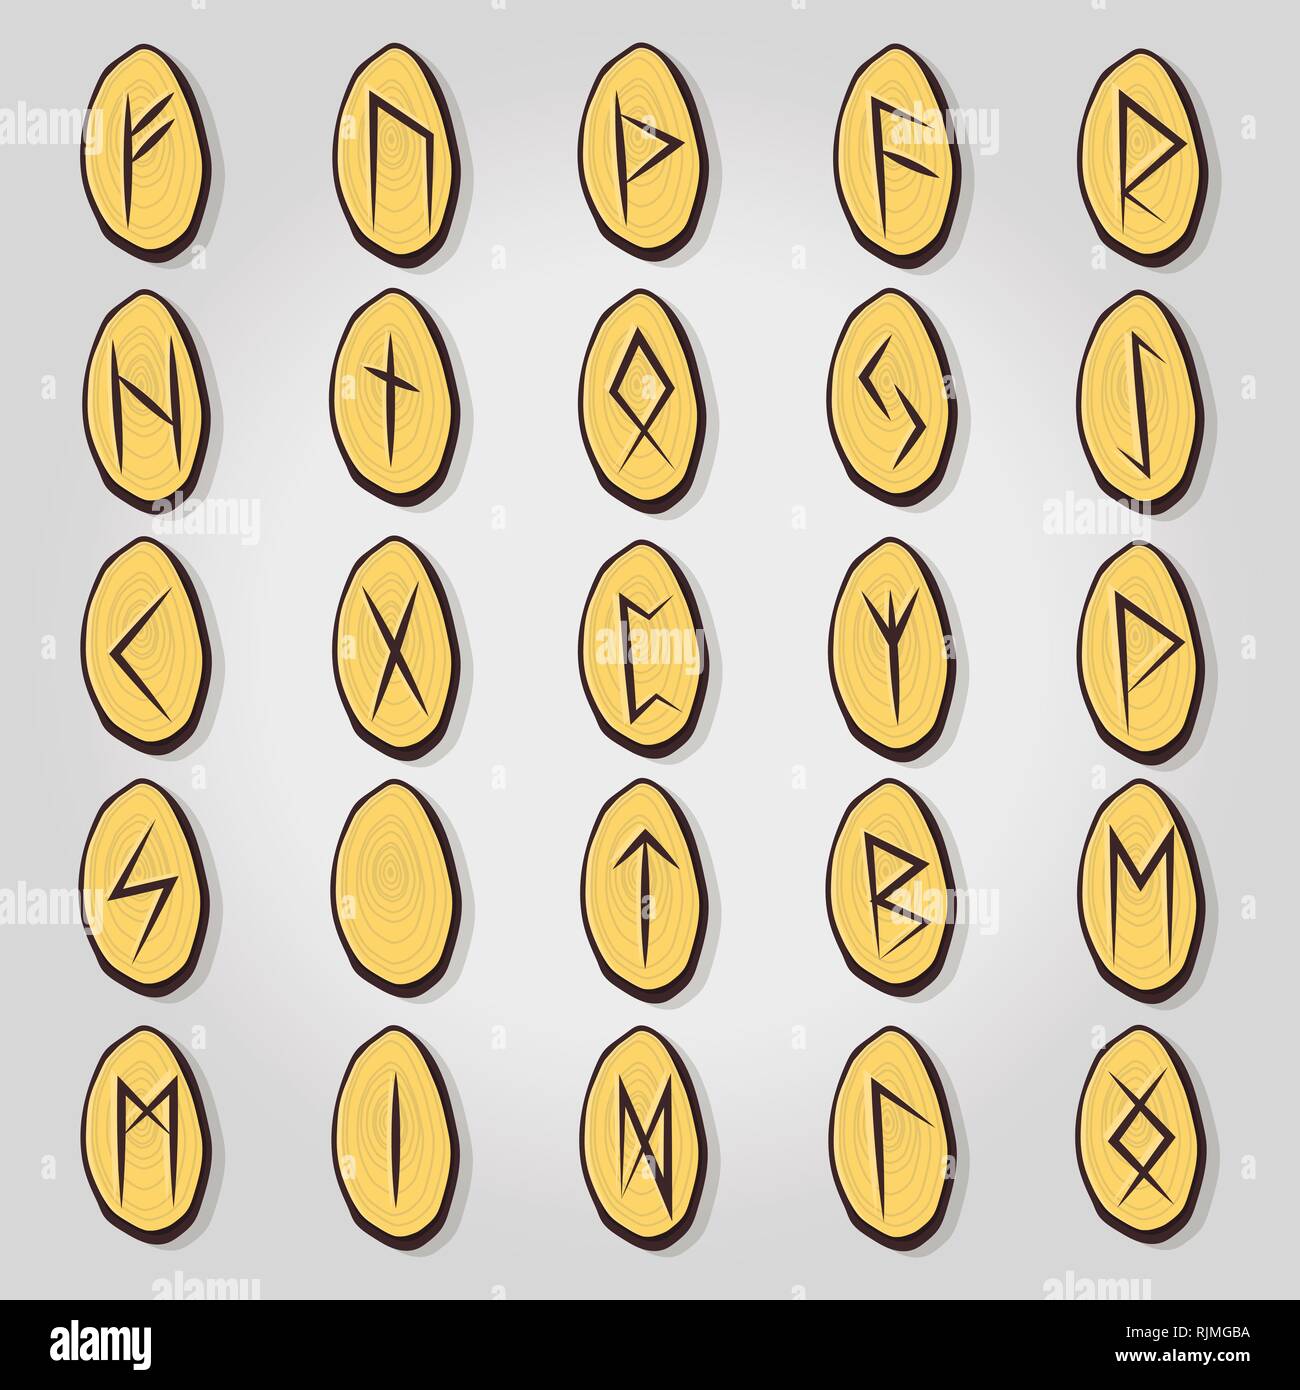 Jeu de runes scandinaves en vieux norrois. L'alphabet runique, futhark. Illustration de Vecteur